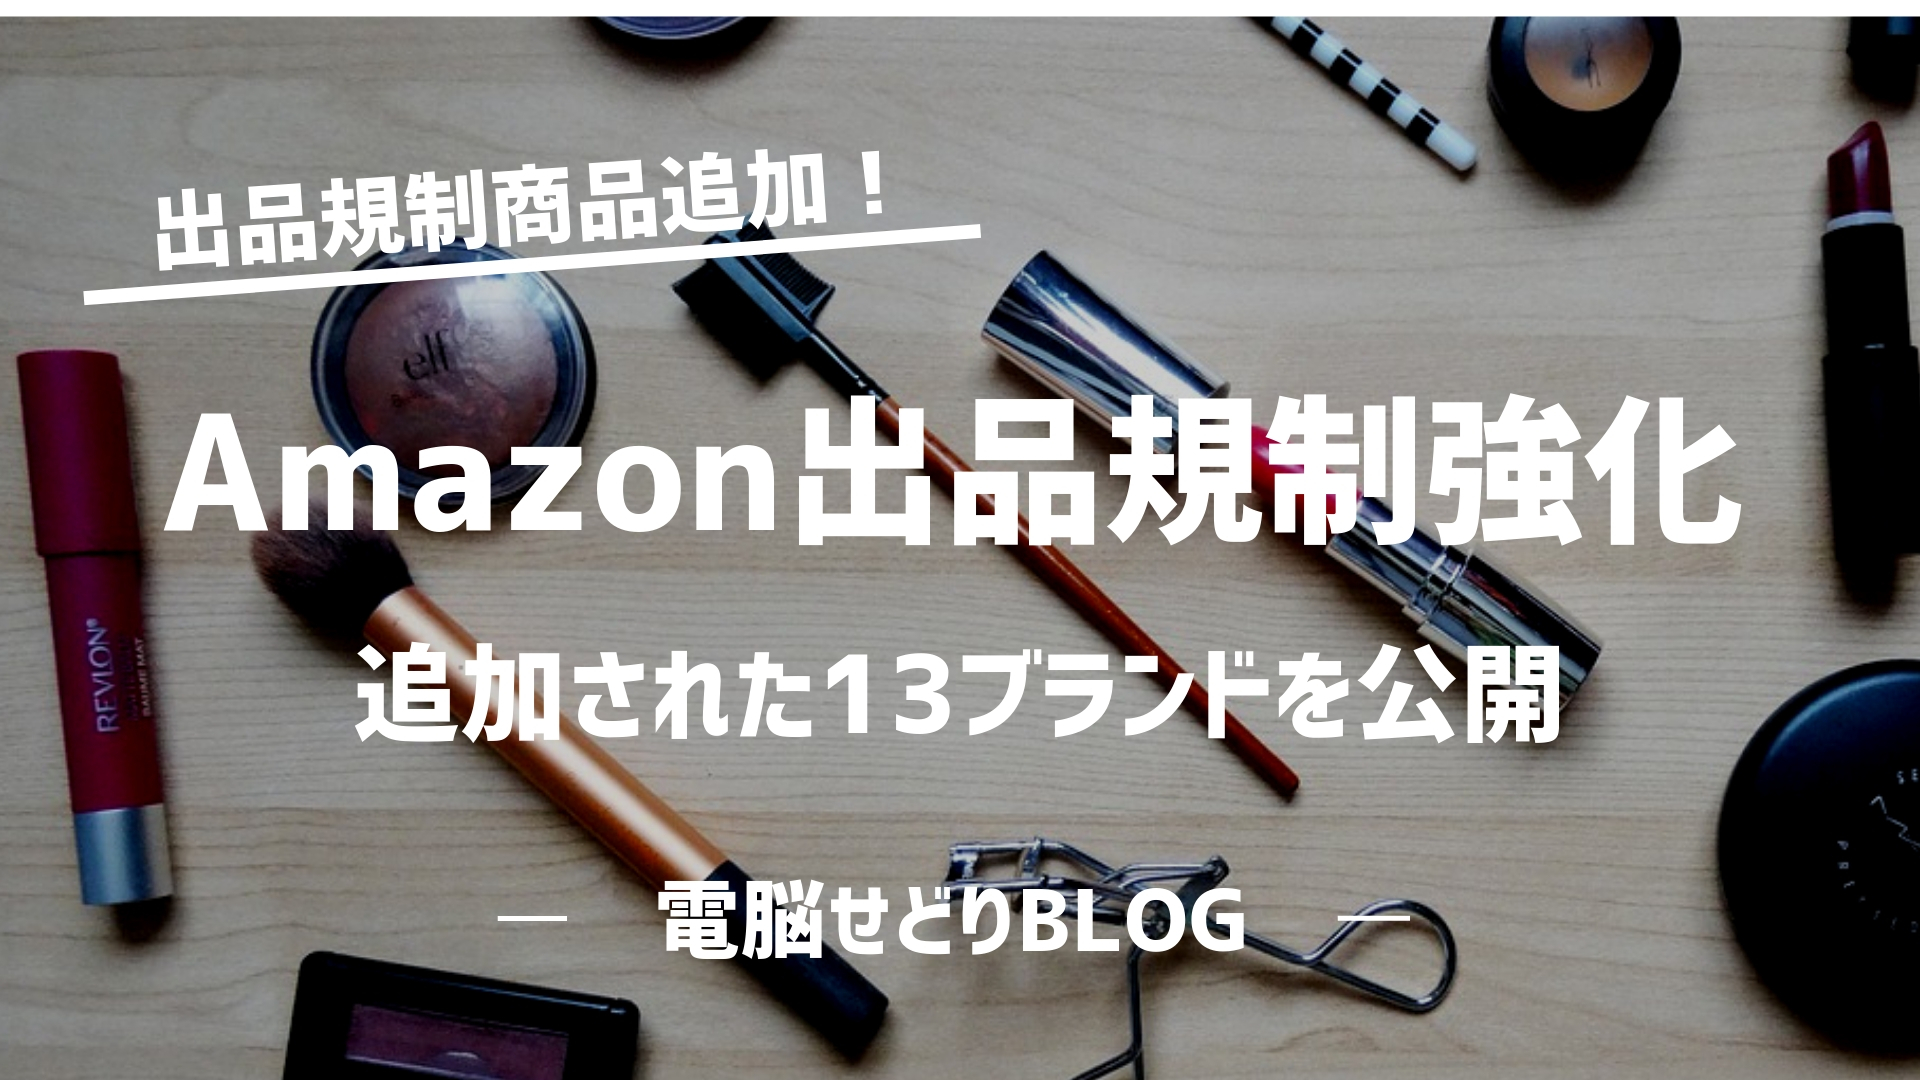 タイトル Amazon出品規制追加 キャプション